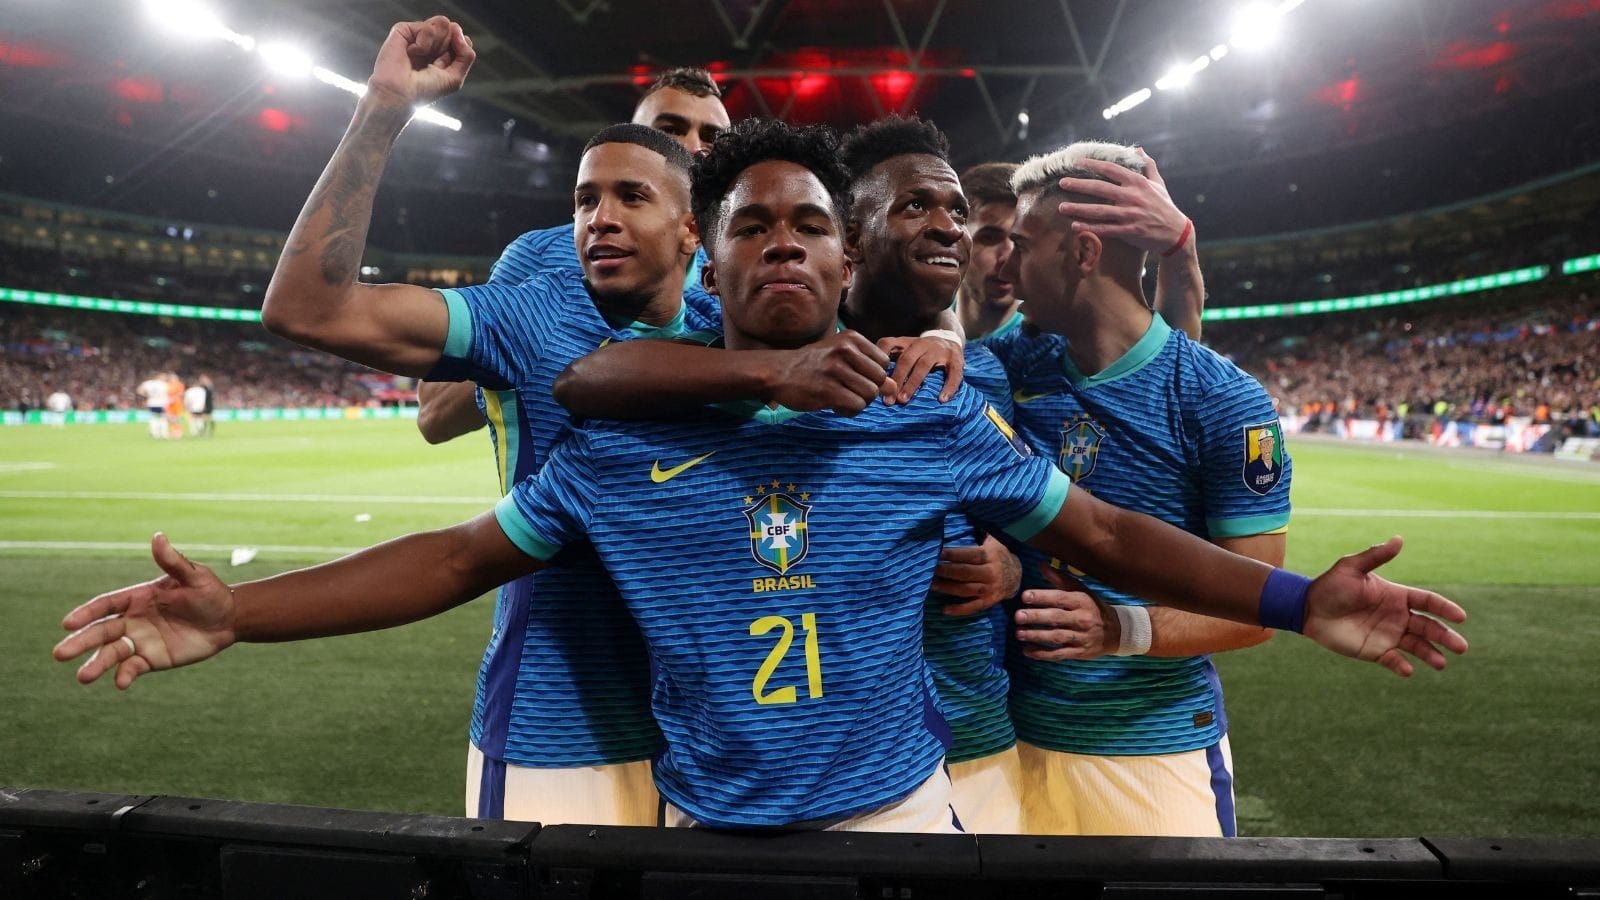 Quando é a final da Copa do Brasil de 2023?